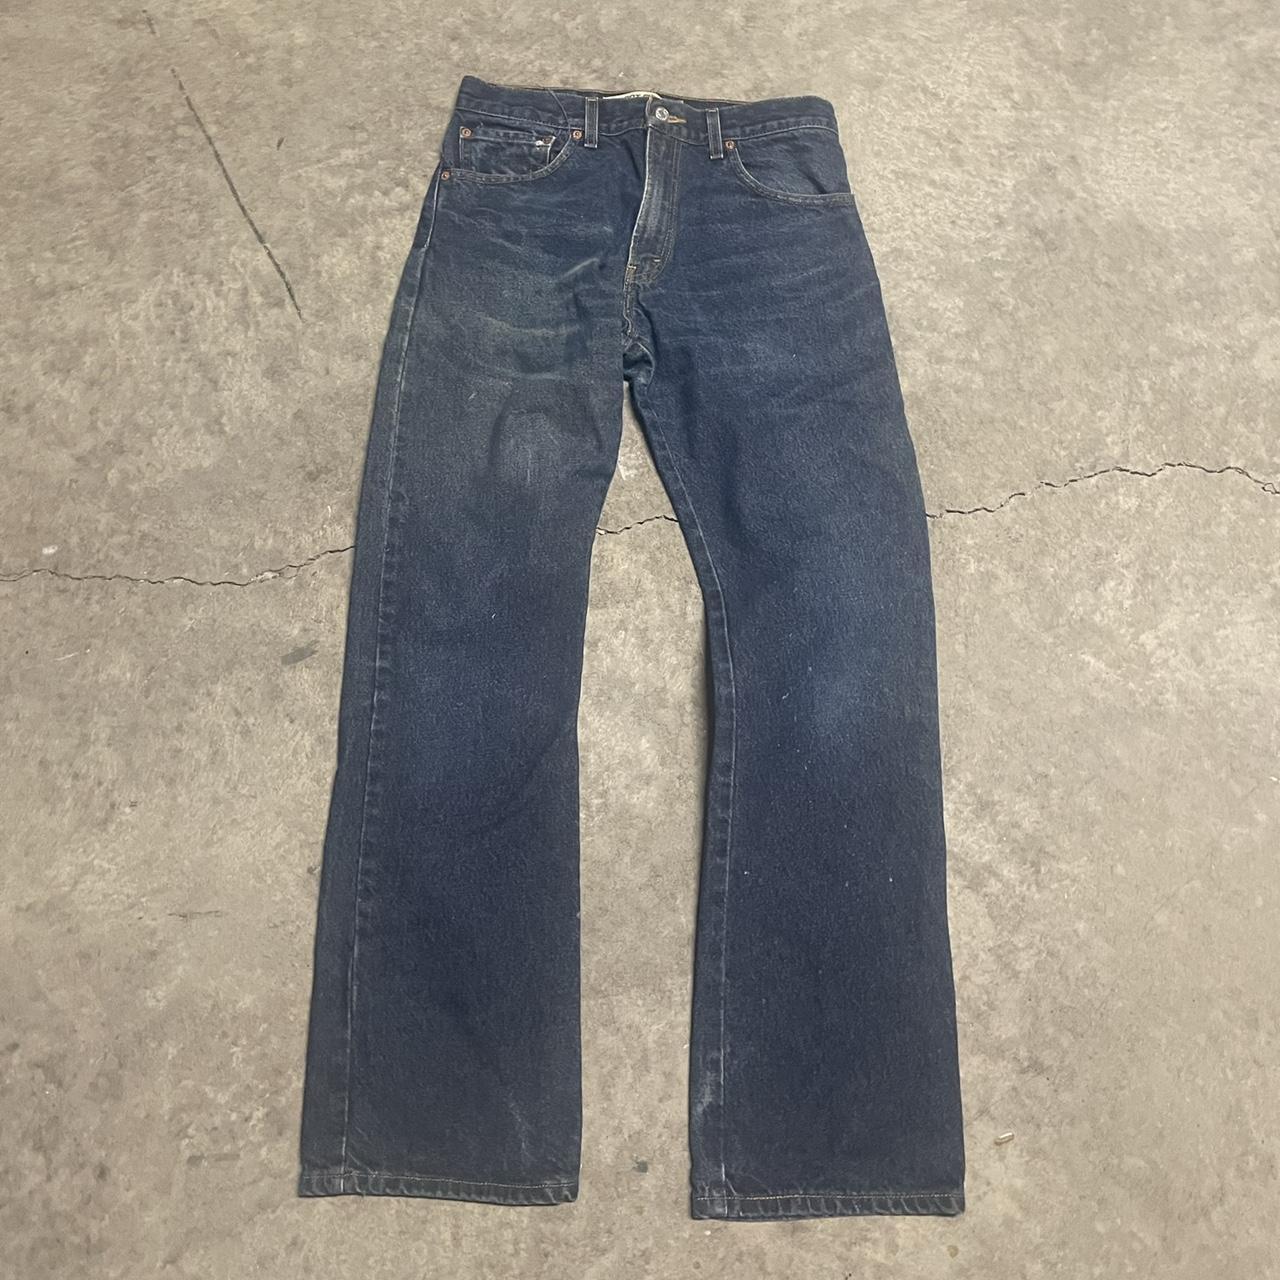 Vintage Levis jeans 517 boot cut Size 32x32 Paint... - Depop